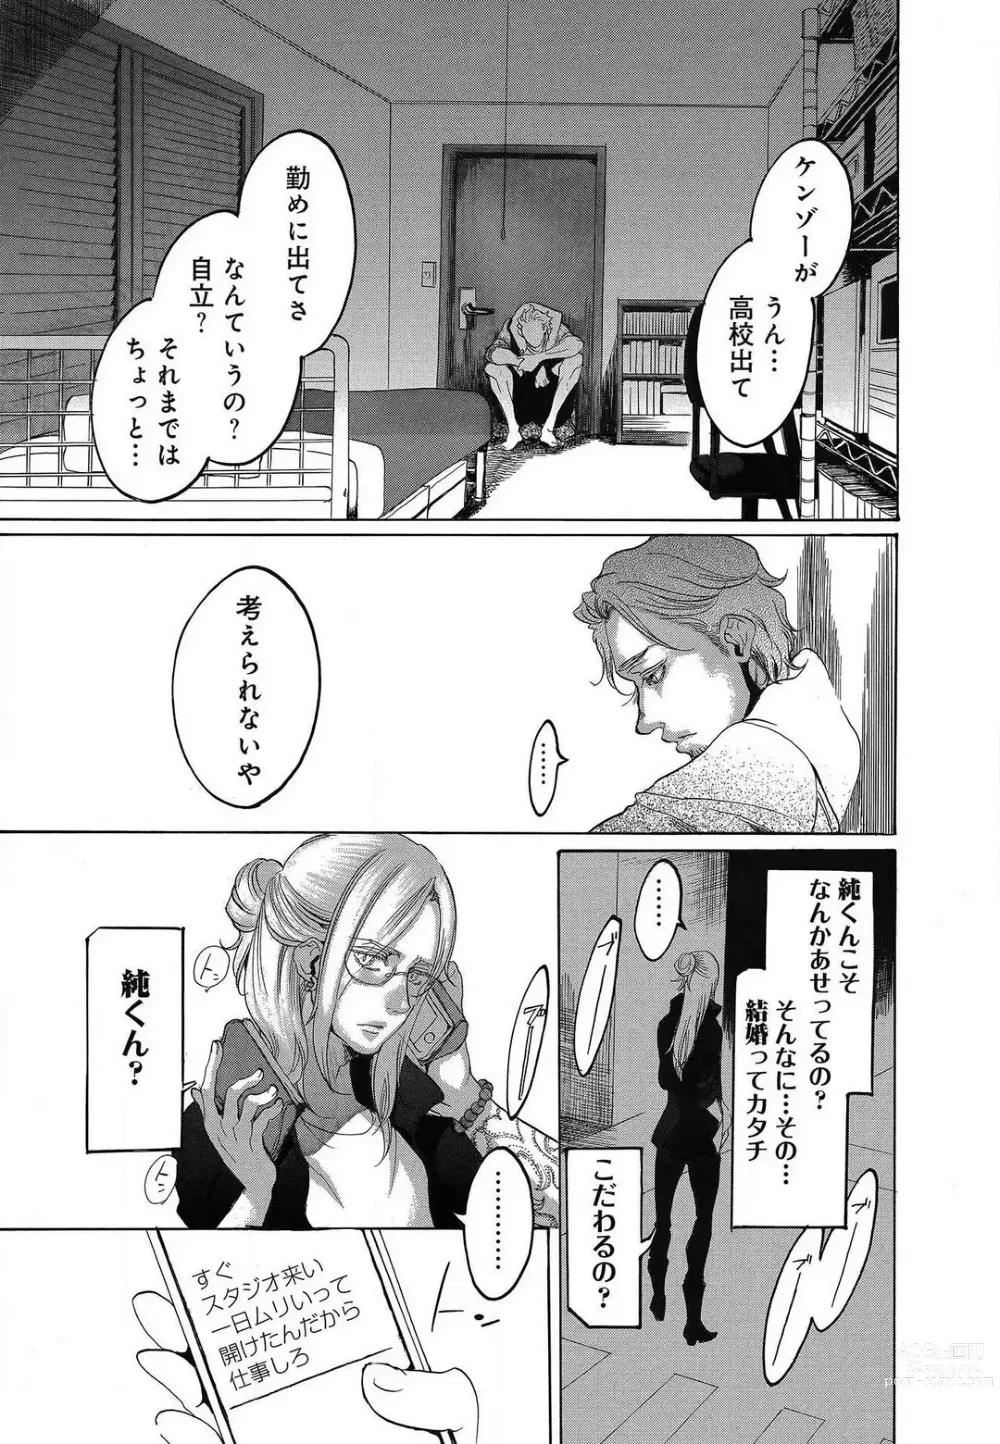 Page 477 of manga Kizutsukeru you ni Aishiaimashou 1-10